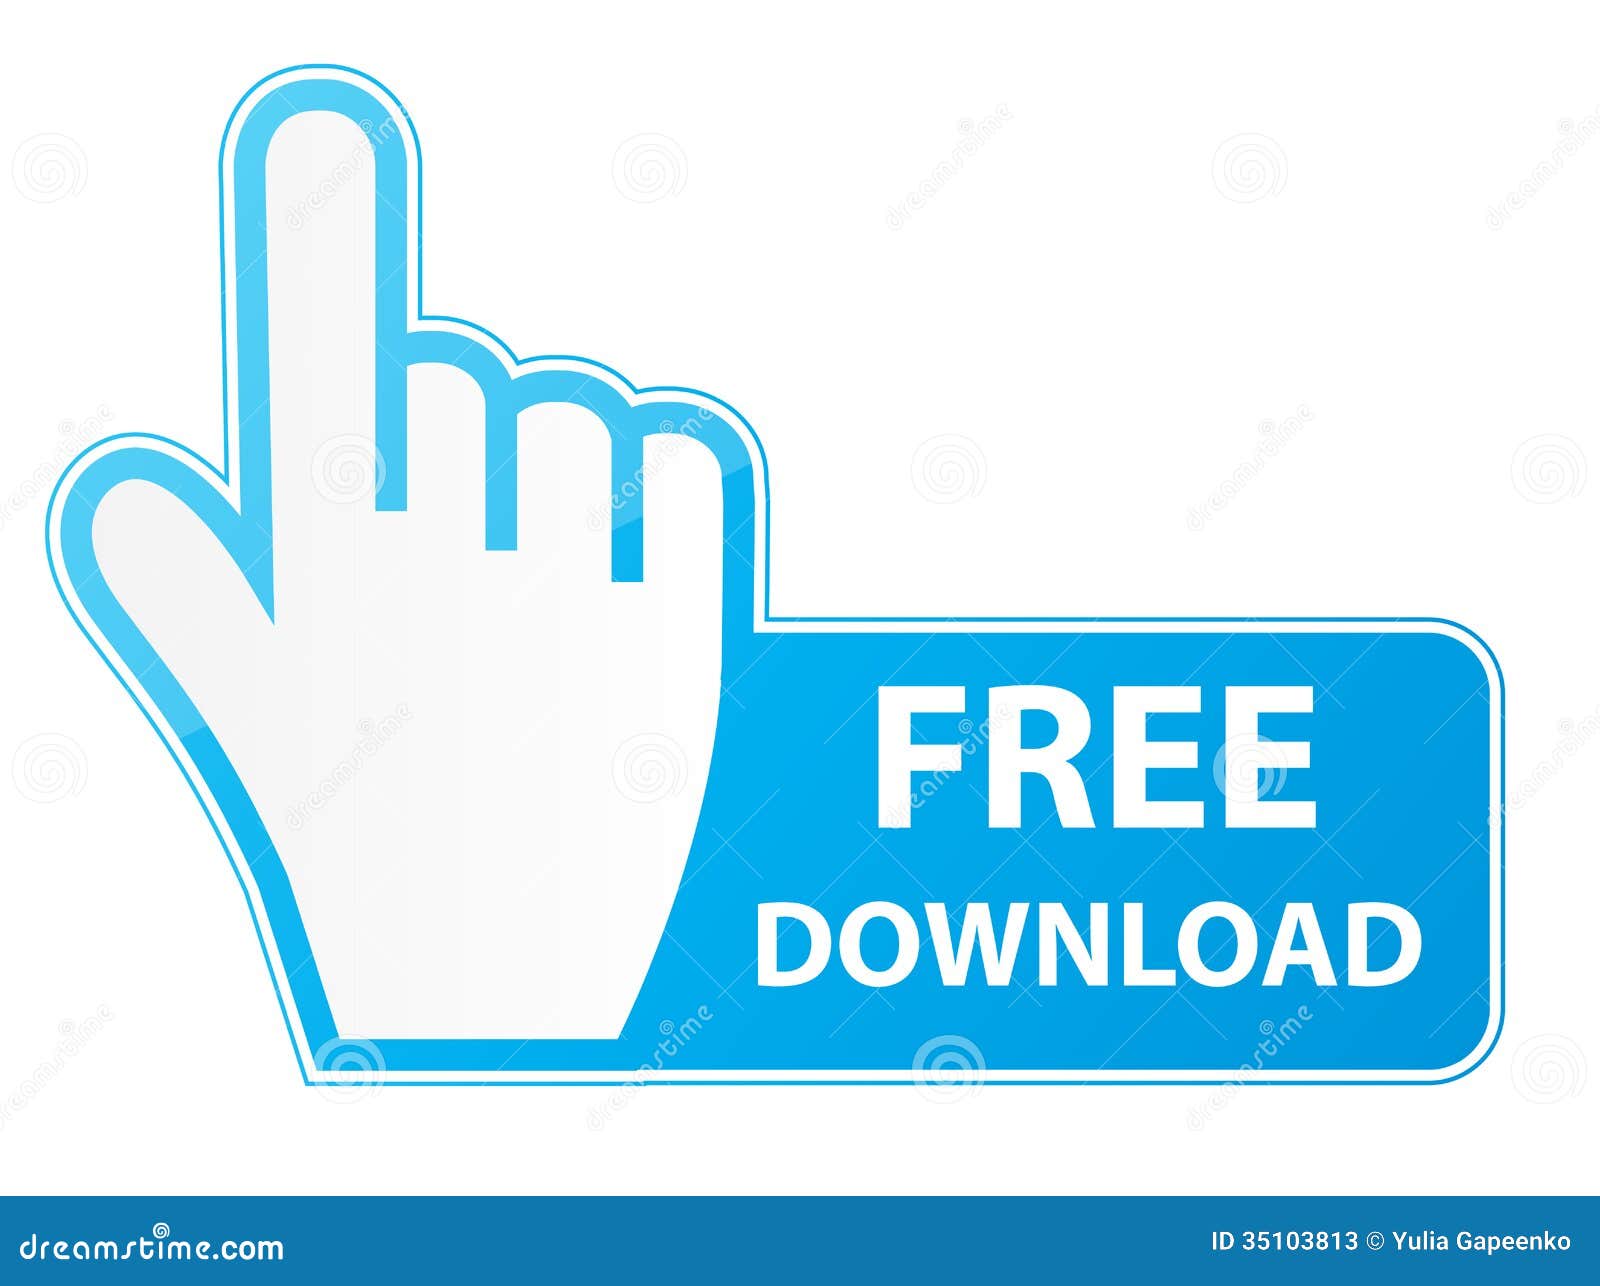 Versamap 3 For Windows Crack Keygen For (LifeTime) Free Download For Windows